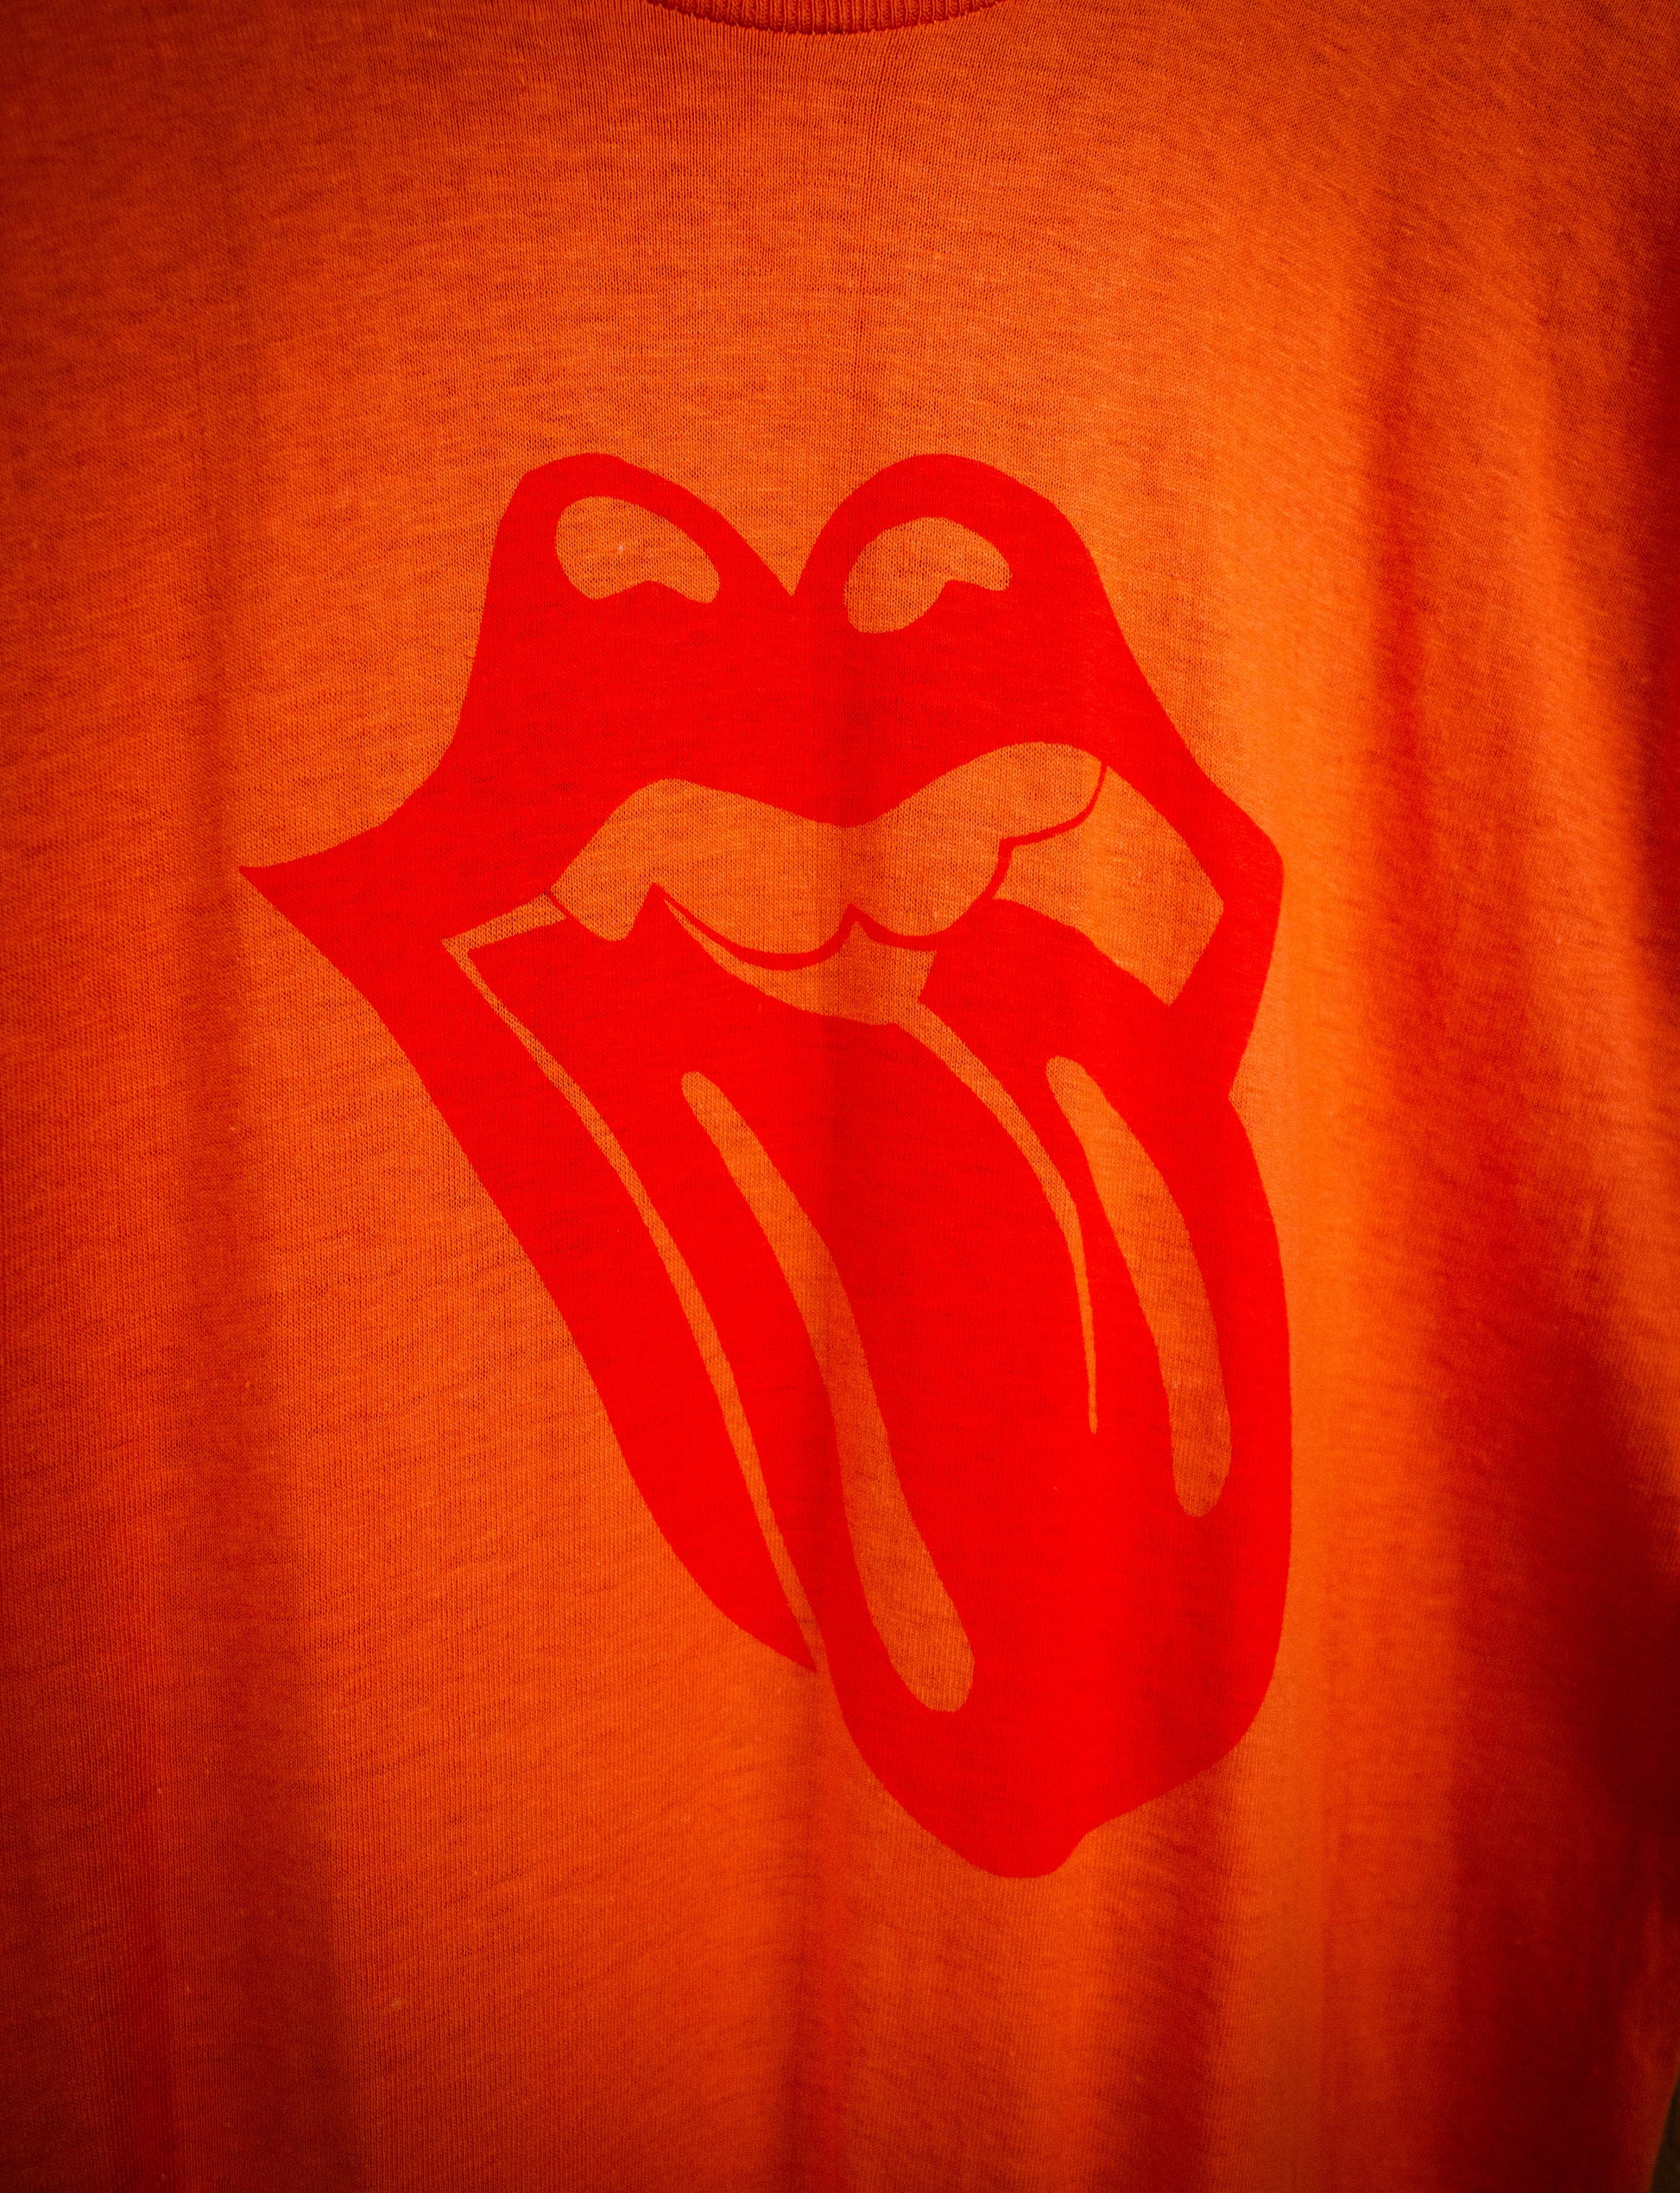 Vintage Rolling Stones Reverse Tongue Concert T Shirt 70s Orange